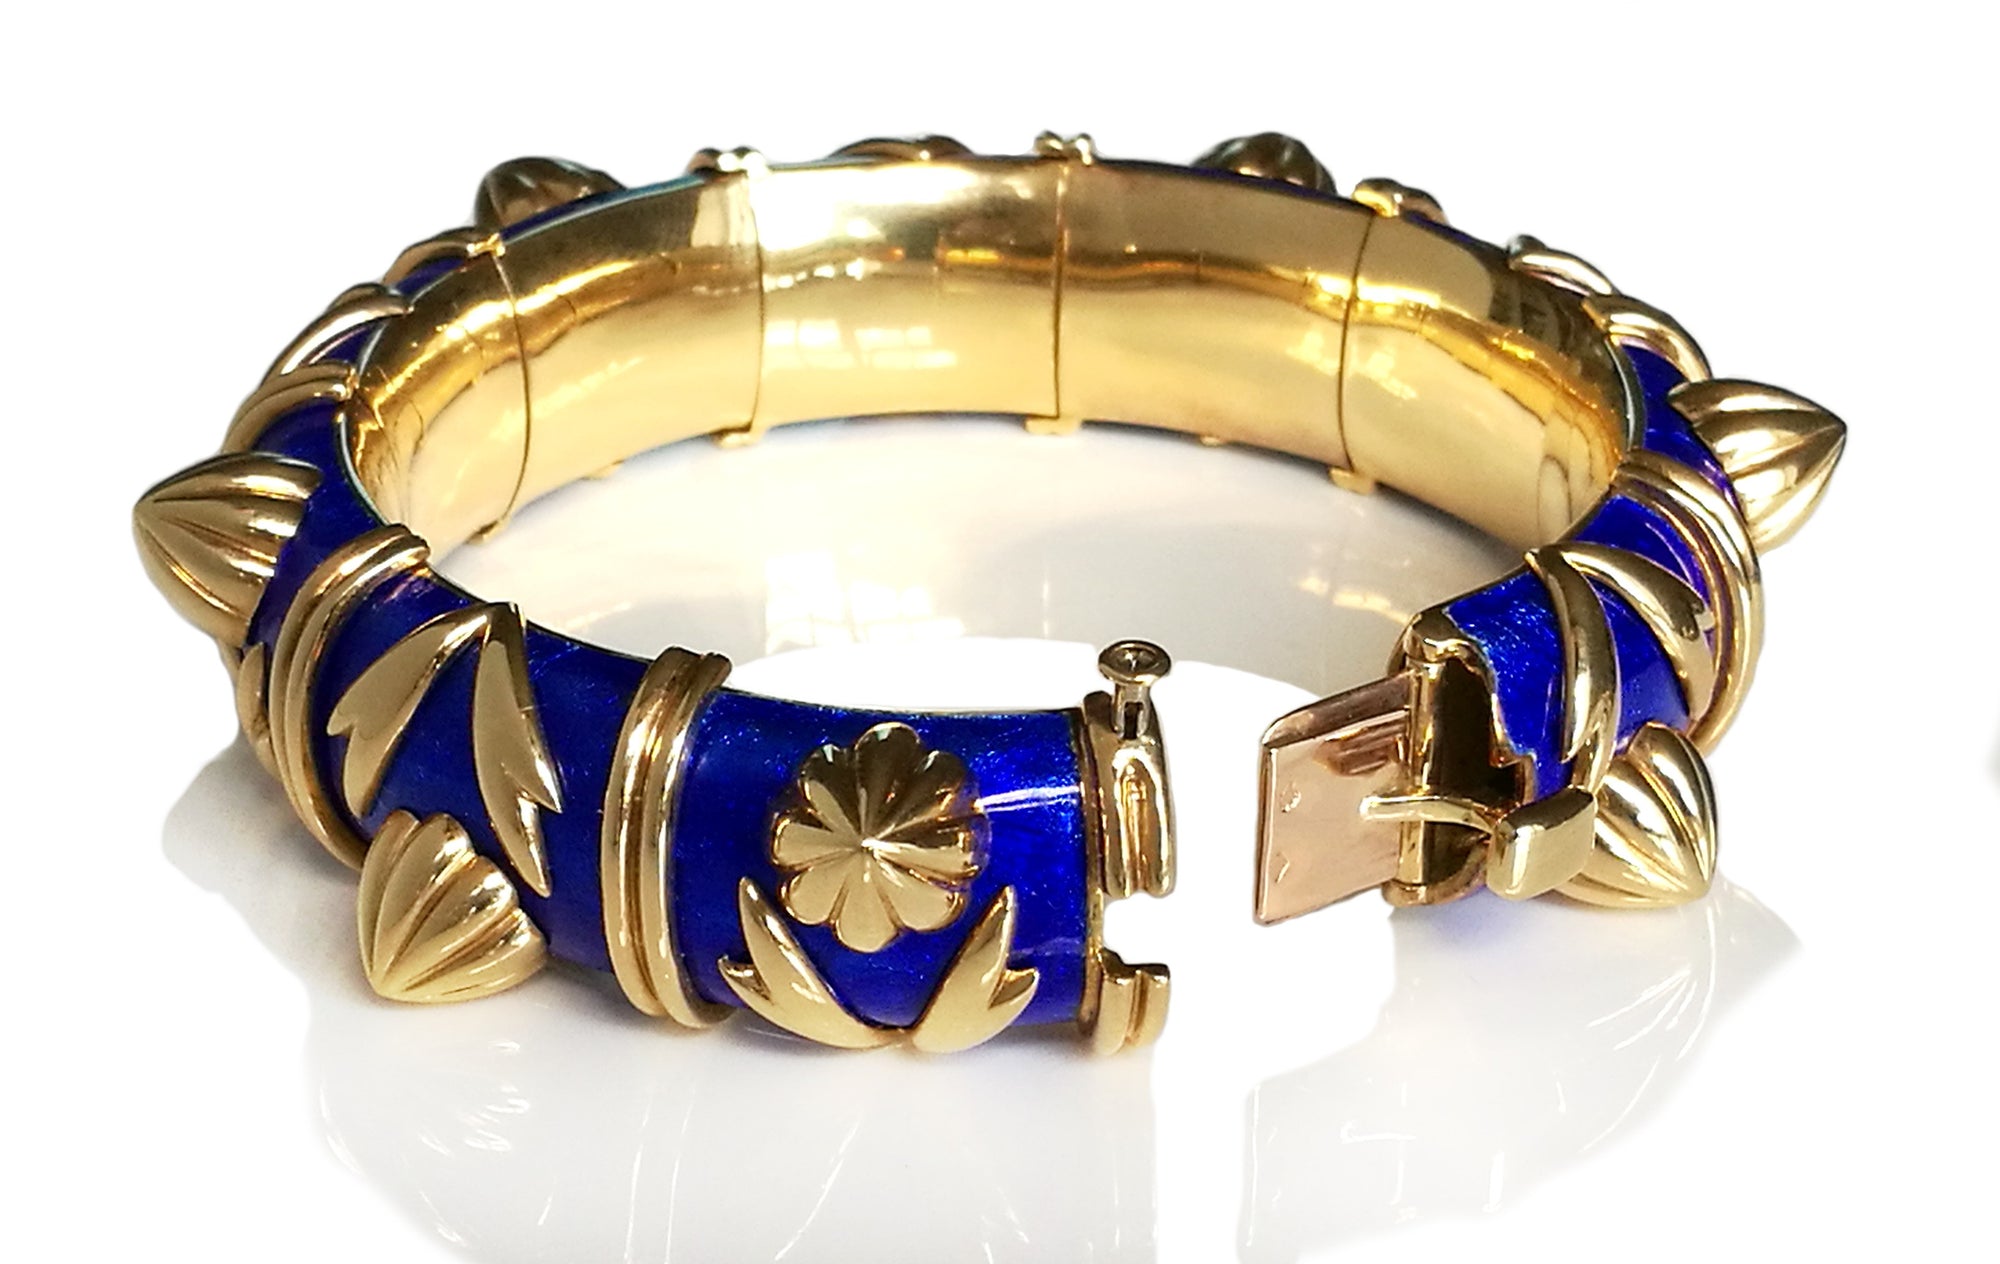 Tiffany & Co. Schlumberger Blue Paillonne Enamel 'Cones' Bracelet in  18k Yellow Gold